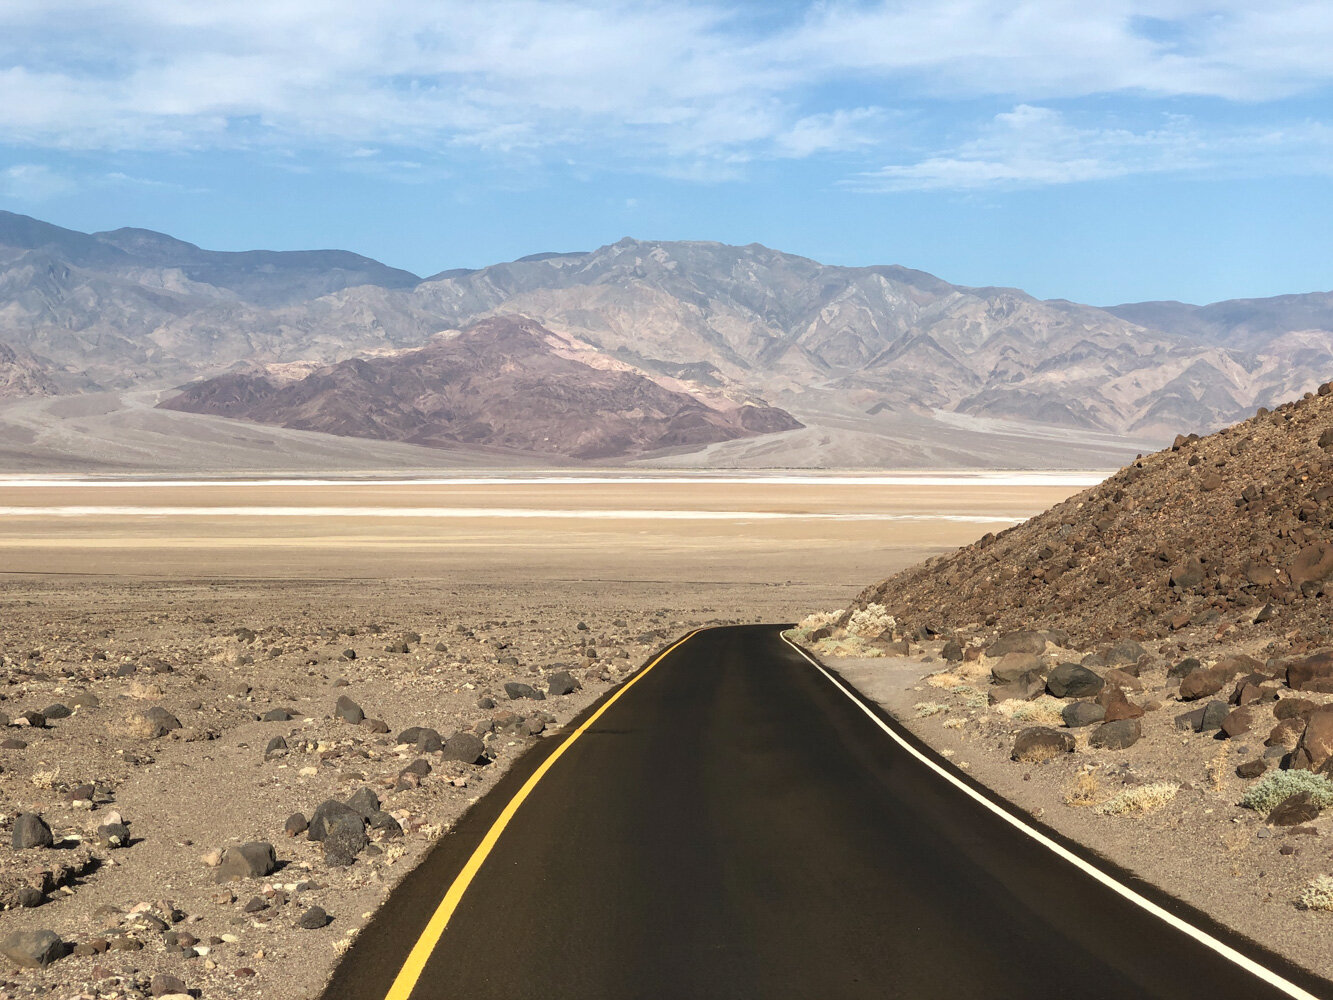  Vallée de la mort. Artists Drive, Californie, Etats-Unis. Août 2019 // Death Valley. Artists Drive, California, USA. August 2019. 